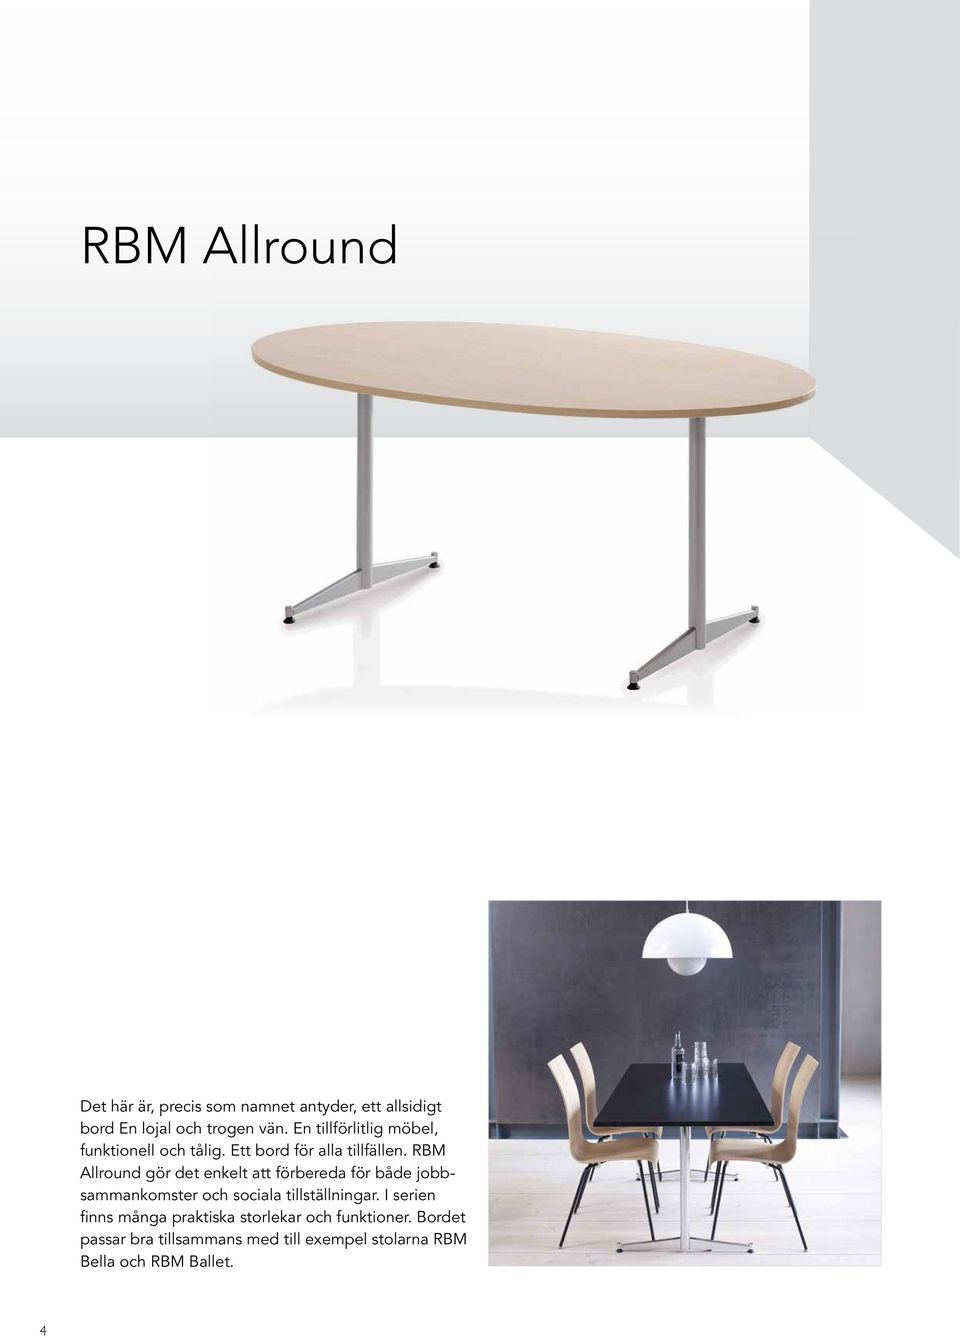 RBM Allround gör det enkelt att förbereda för både jobbsammankomster och sociala tillställningar.